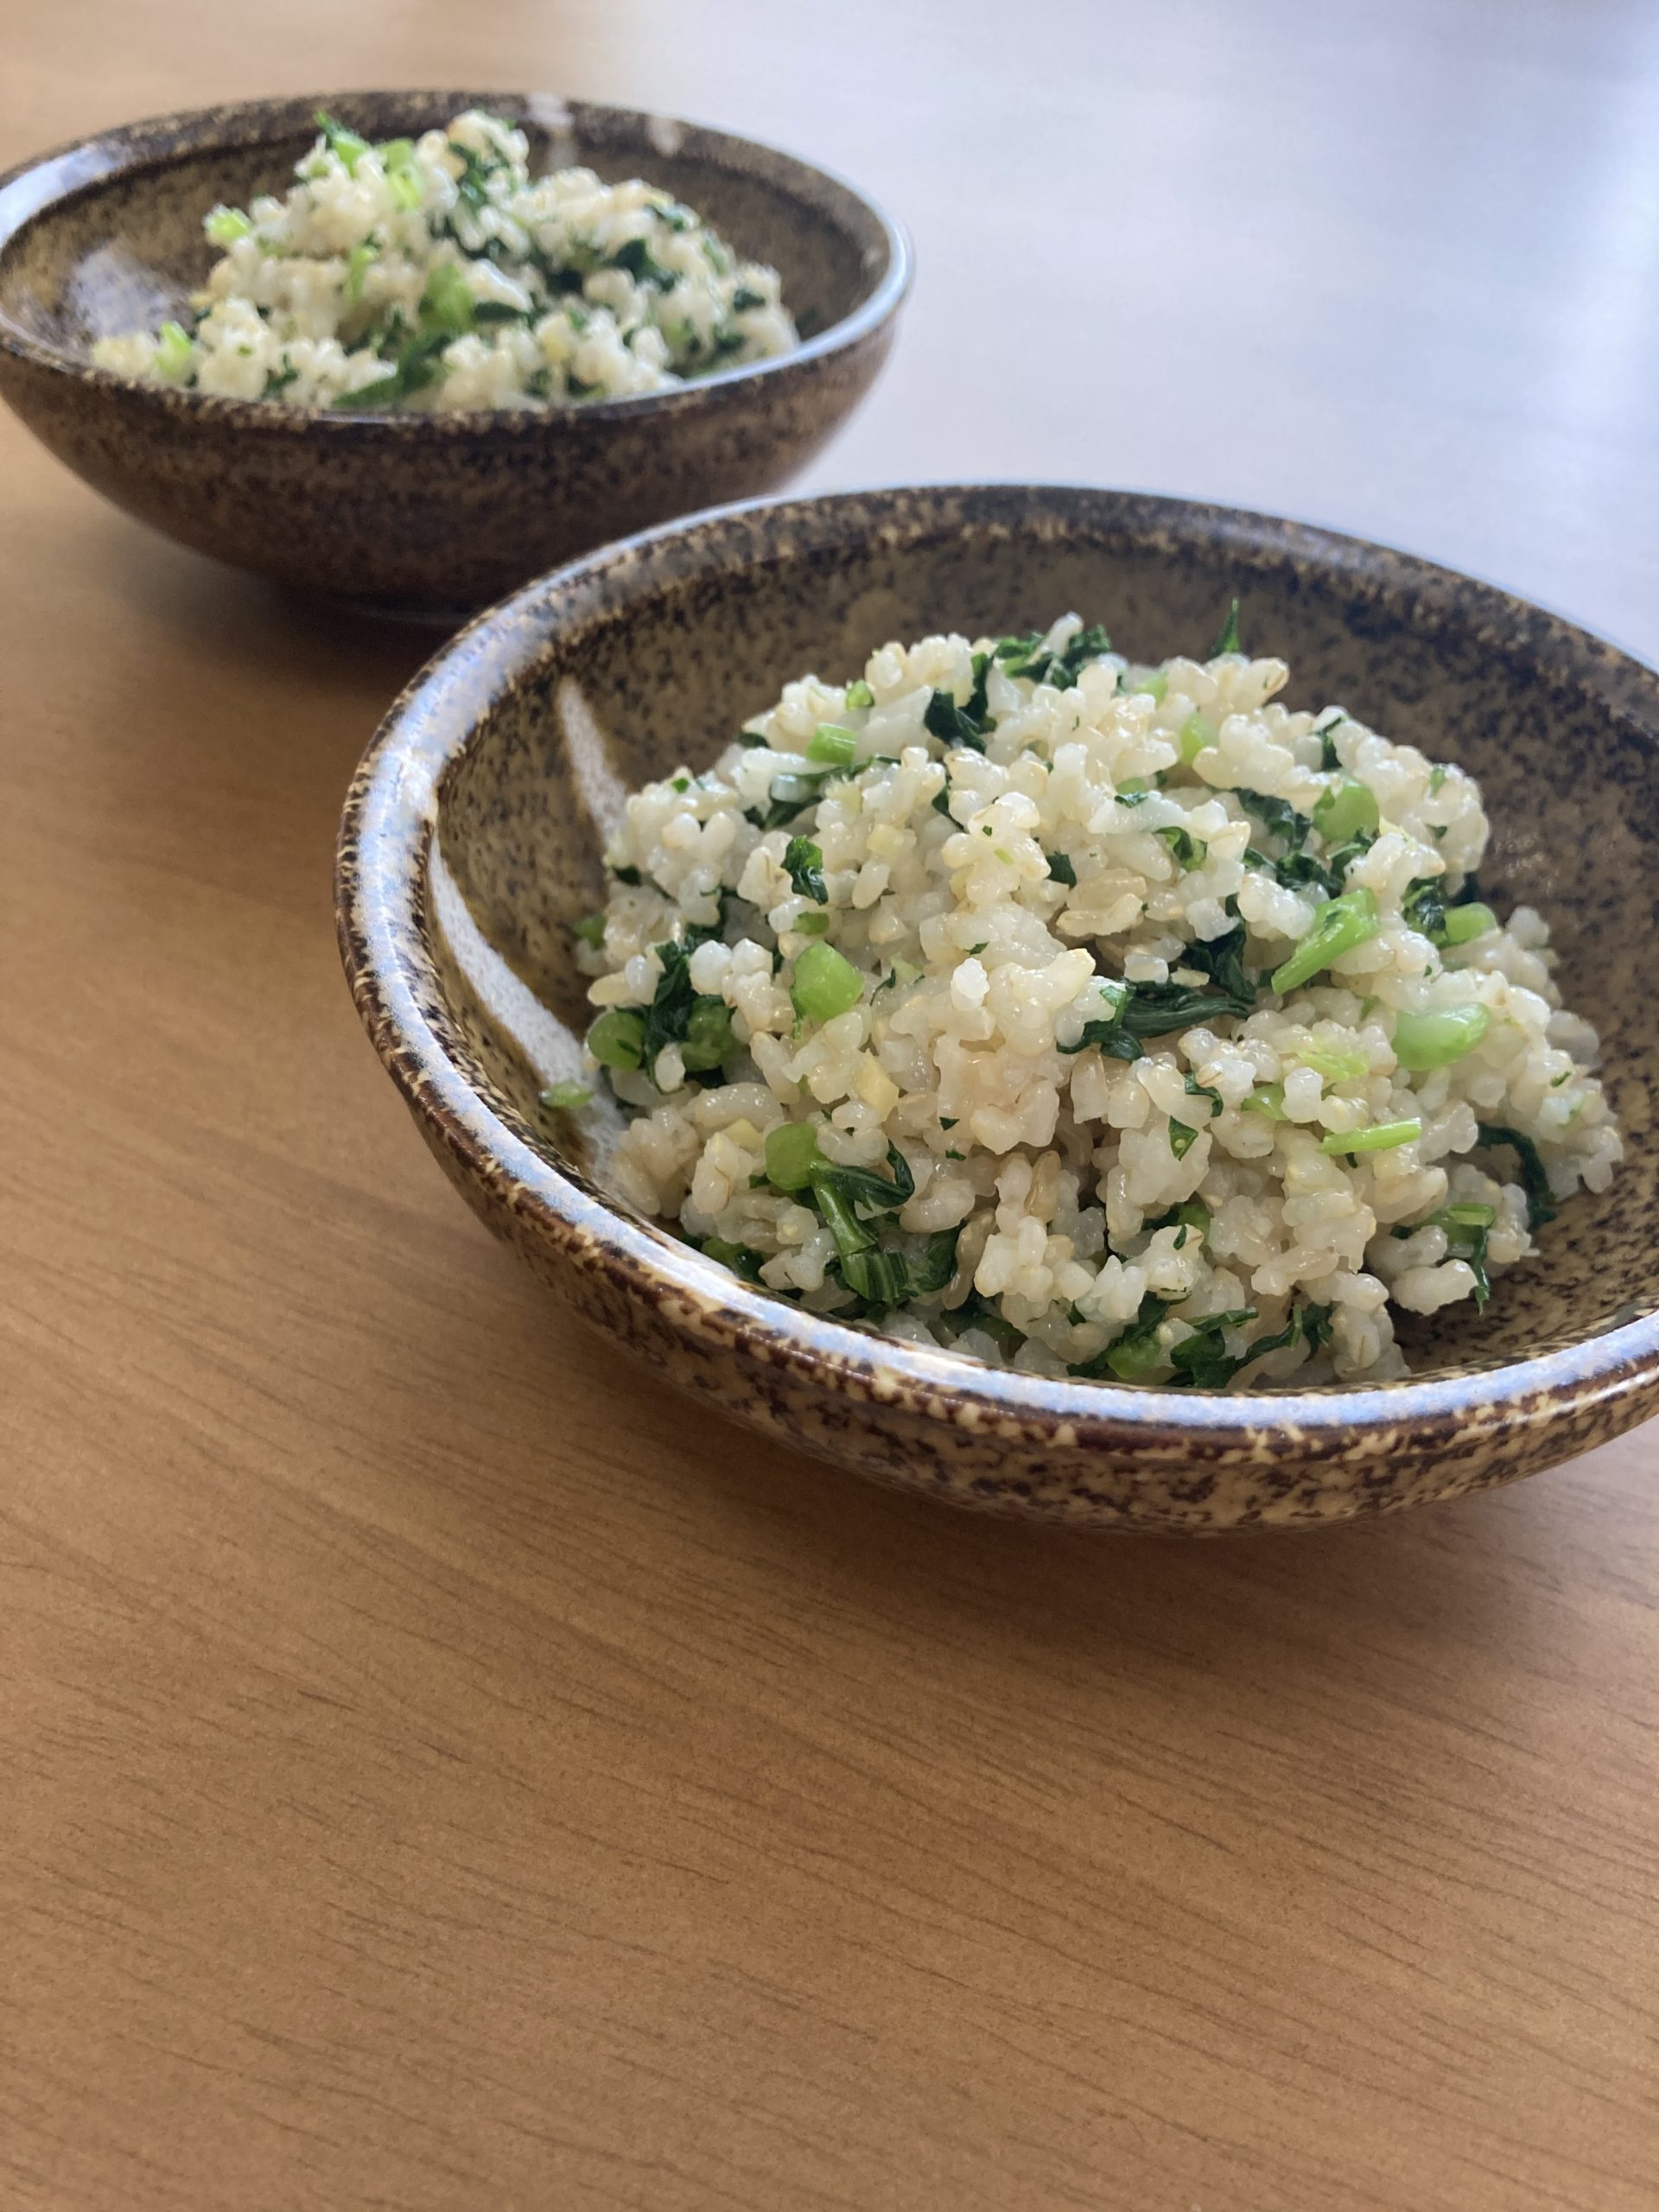 YouTube動画第９弾「青菜と生姜の混ぜごはん」を投稿しました。実はこの料理、薬膳のレシピなんです。薬膳と聞いたら難しいイメージがあるかもしれませんが、この料理は材料が少なく、簡単に作ることができます。このレシピに使われるお米は「玄米」です。玄米とは、収穫した稲から籾殻（もみがら）を除いた状態のお米のことです。玄米は白米よりもビタミンB群、ミネラル、食物繊維が豊富で、「完全栄養食」ともよばれます。不要なものを排出するデトックス効果や、ダイエット効果も期待できます。外出自粛で運動不足の方にもよいですね。ここで、お米を保存するときのポイントを紹介します。温度、湿度に気をつける必要があります。理想的な温度は10〜15度です。お米は高温や直射日光にとても弱いので避けるようにしましょう。夏場には野菜室で保存するのが良いです。お米は湿気にも弱いです。水回りを避けて濡れない場所、風通しの良い場所に保存しましょう。密閉して保存することも大切です。湿気や酸化から守り、防虫にも役立ちます。この料理は生姜をたっぷり使用しています。生姜が味のアクセントになり、少量の塩でも満足できます。生姜の辛味成分である「ジンゲロール」や「ショウガオール」には血行を促進し、発汗を促すなどの体温維持効果があるといわれています。身体を温める効果により、風邪予防につながります。コロナに負けない免疫力をつけましょう！ここで、生姜の下ごしらえのコツを紹介します。皮を剥くときは、スプーンを使うとよいです。無駄なく、手軽に皮を剥くことができます。生姜の表面にスプーンの端を当て、皮を削ぎ落とすようにします。しかし、皮と実の間に栄養成分がたくさん詰まっているので、皮の剥きすぎには注意です。新鮮で農薬を使っていないものは、皮剥きなしで使いましょう！すりおろす場合も皮剥きは必要ないです。さらに、保存方法を紹介します。生の生姜に含まれるジンゲロールは熱や乾燥で変化しやすいです。そのため、生姜を新聞紙かラップに包み、冷暗所で保存しましょう。今回使用した青菜は大根の葉です。みなさんは大根の葉を食べていますか？葉には根にはない栄養素がたくさん含まれています。特に、皮膚や粘膜の健康を維持する効果のあるβカロテンが豊富です。葉まで食べることで食品ロスを防ぐことができます。ぜひ、活用しましょう✨この「青菜と生姜の混ぜごはん」をはじめとするレシピ動画は、YouTubeで公開しています。是非ご覧ください♪https://youtu.be/sKMCAIYCXvY〜青菜と生姜の混ぜごはんの作り方〜〈材料　3〜4人前〉玄米　2合生姜　30g青菜　2株（大根の葉、小松菜、かぶの葉など好みのものでよい）塩　小さじ1水　適量〈作り方〉1.生姜の皮を剥き、みじん切りにする。2.玄米を洗い、2合の線まで水を入れ、塩・1を入れて炊飯する。（炊飯器に玄米用の目盛りやコースがあれば、使用する）3.青菜を2〜3分程度茹で、冷水で冷やす。水を切って、みじん切りにする。4.炊き上がったご飯と3を混ぜ合わせる。5.お皿に盛り付けて、完成！*:..｡o○☆*ﾟ¨ﾟﾟ･*:..｡o○☆*ﾟ¨ﾟﾟ･*:..｡o○☆･*:..｡o○☆*ﾟ¨ﾟﾟ･*:..｡o○☆*ﾟ¨ﾟﾟ･*:..｡o○住所：兵庫県芦屋市公光町4-20-303　　　株式会社然 （http://www.zenmarche.com/）http://fun-westjapan.com/【発行者】 fun実行委員会～栄養学生団体【fun】は、栄養士・管理栄養士養成コースの学生が社会や企業とコラボレーションしながら、社会で即戦力として通用する経験を積む場です。栄養士・管理栄養士を目指す大学生、専門学校生の就活にも有利です♪♪～･*:..｡o○☆*ﾟ¨ﾟﾟ･*:..｡o○☆*ﾟ¨ﾟﾟ･*:..｡o○☆･*:..｡o○☆*ﾟ¨ﾟﾟ･*:..｡o○☆*ﾟ¨ﾟﾟ･*:..｡